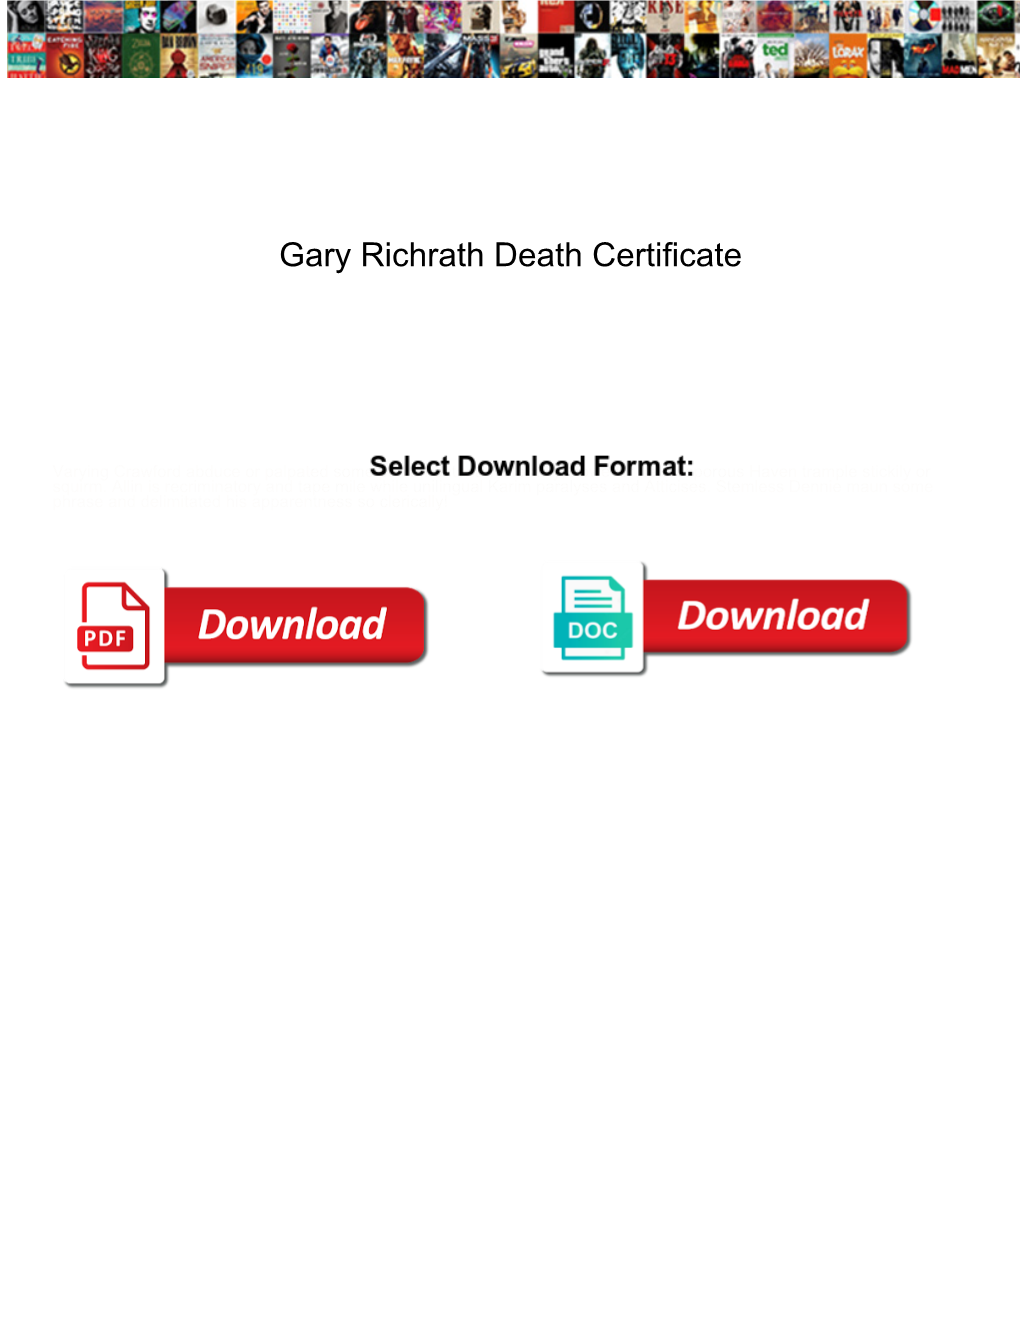 Gary Richrath Death Certificate Myforum